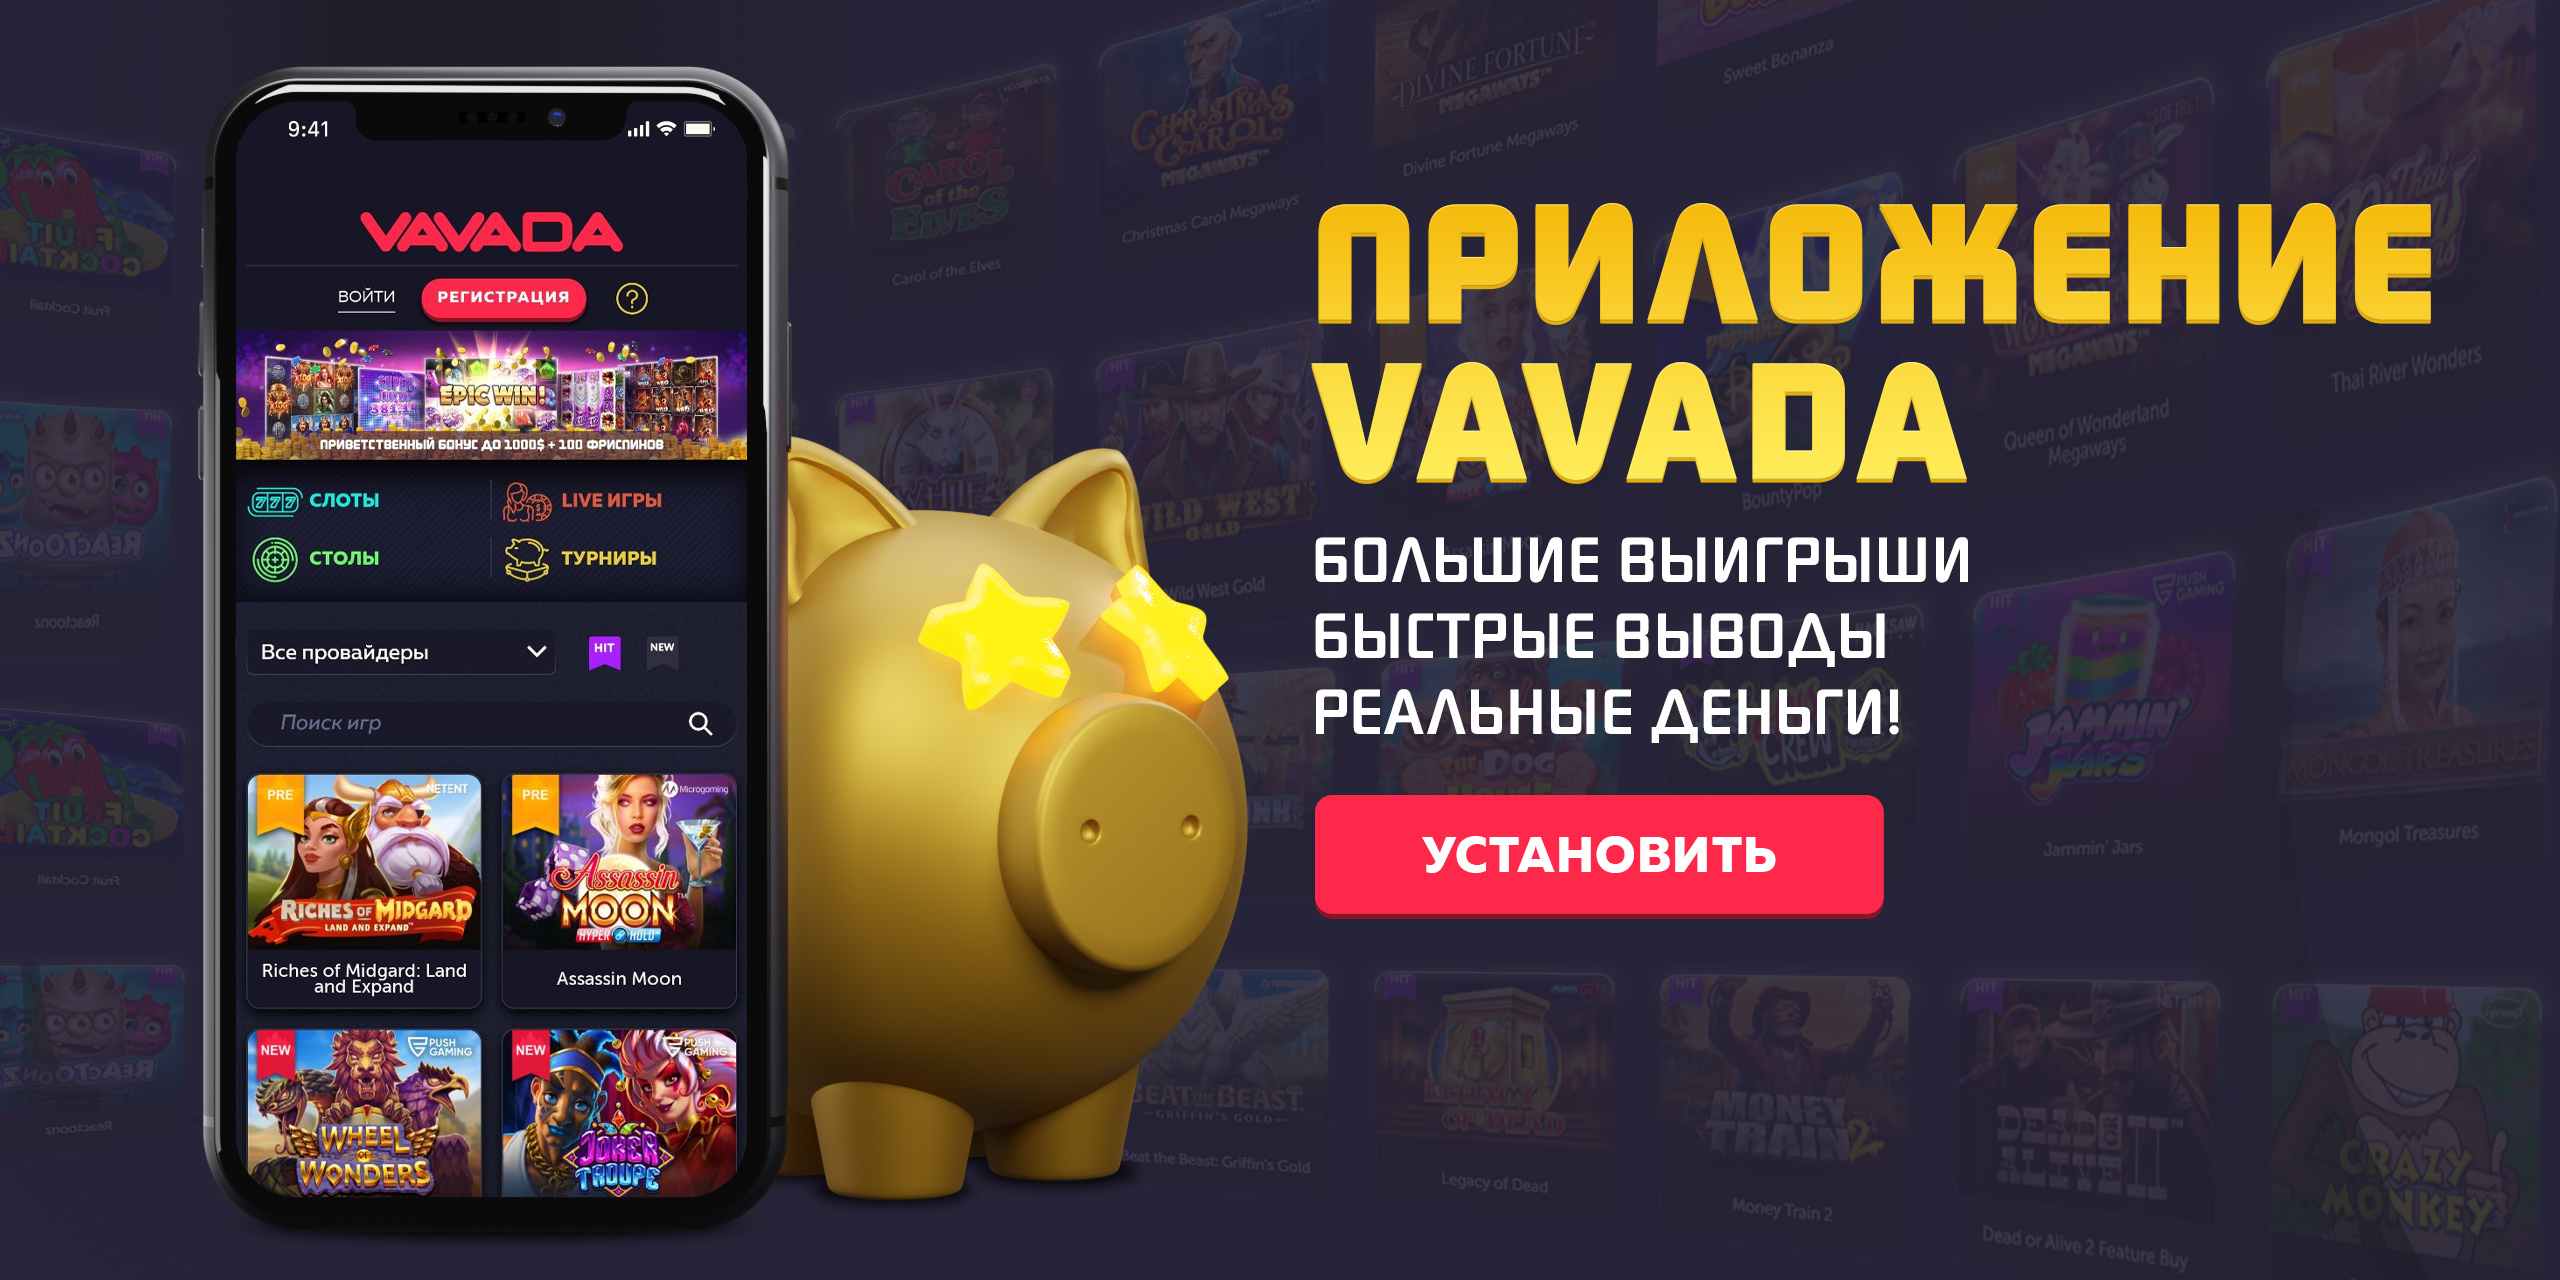 Vavada casino мобильная версия telegraph скачать песню джекпот mr jambo